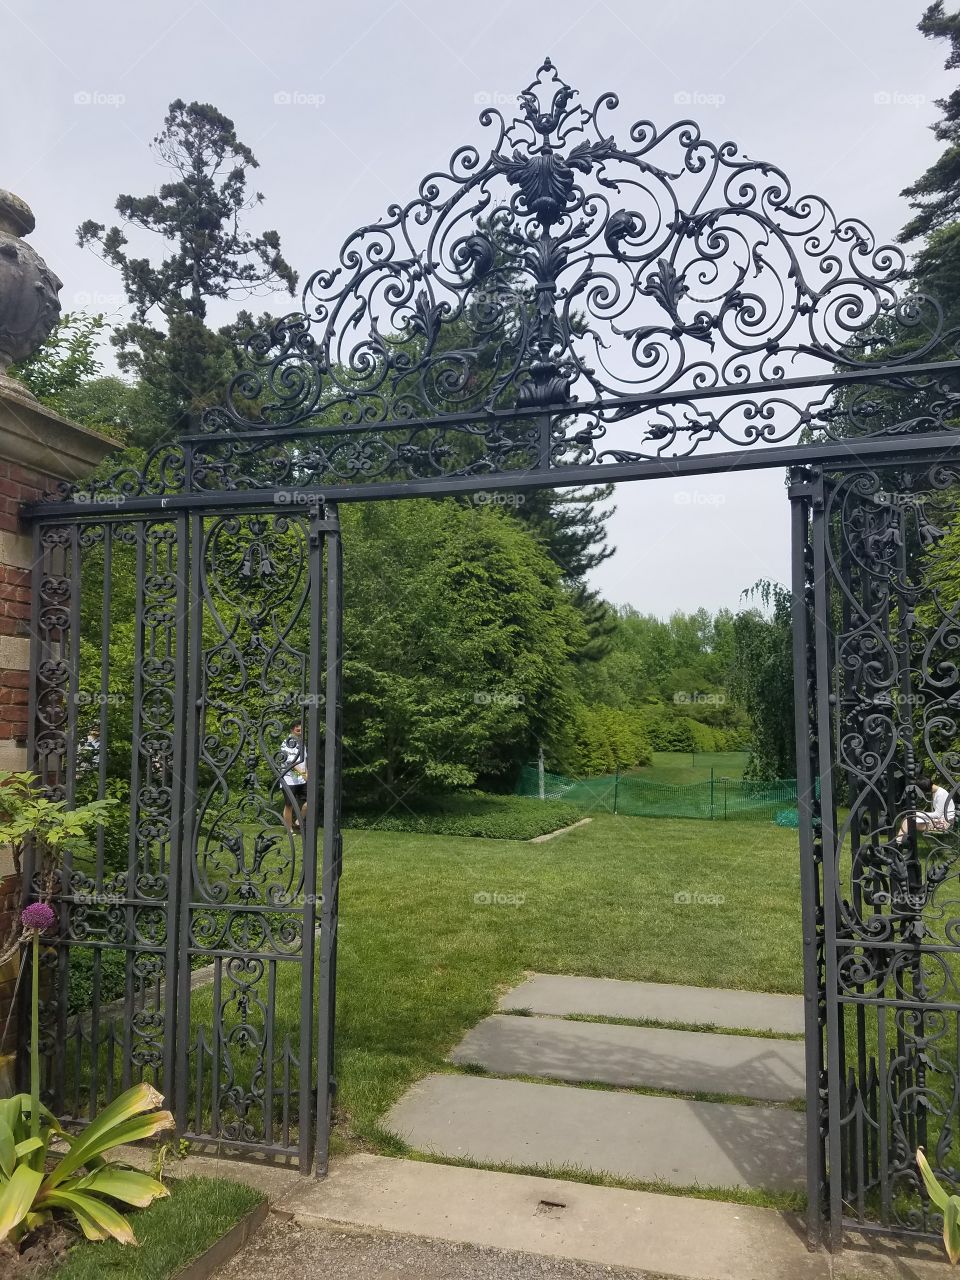 Garden, Gate, Flower, Entrance, Architecture